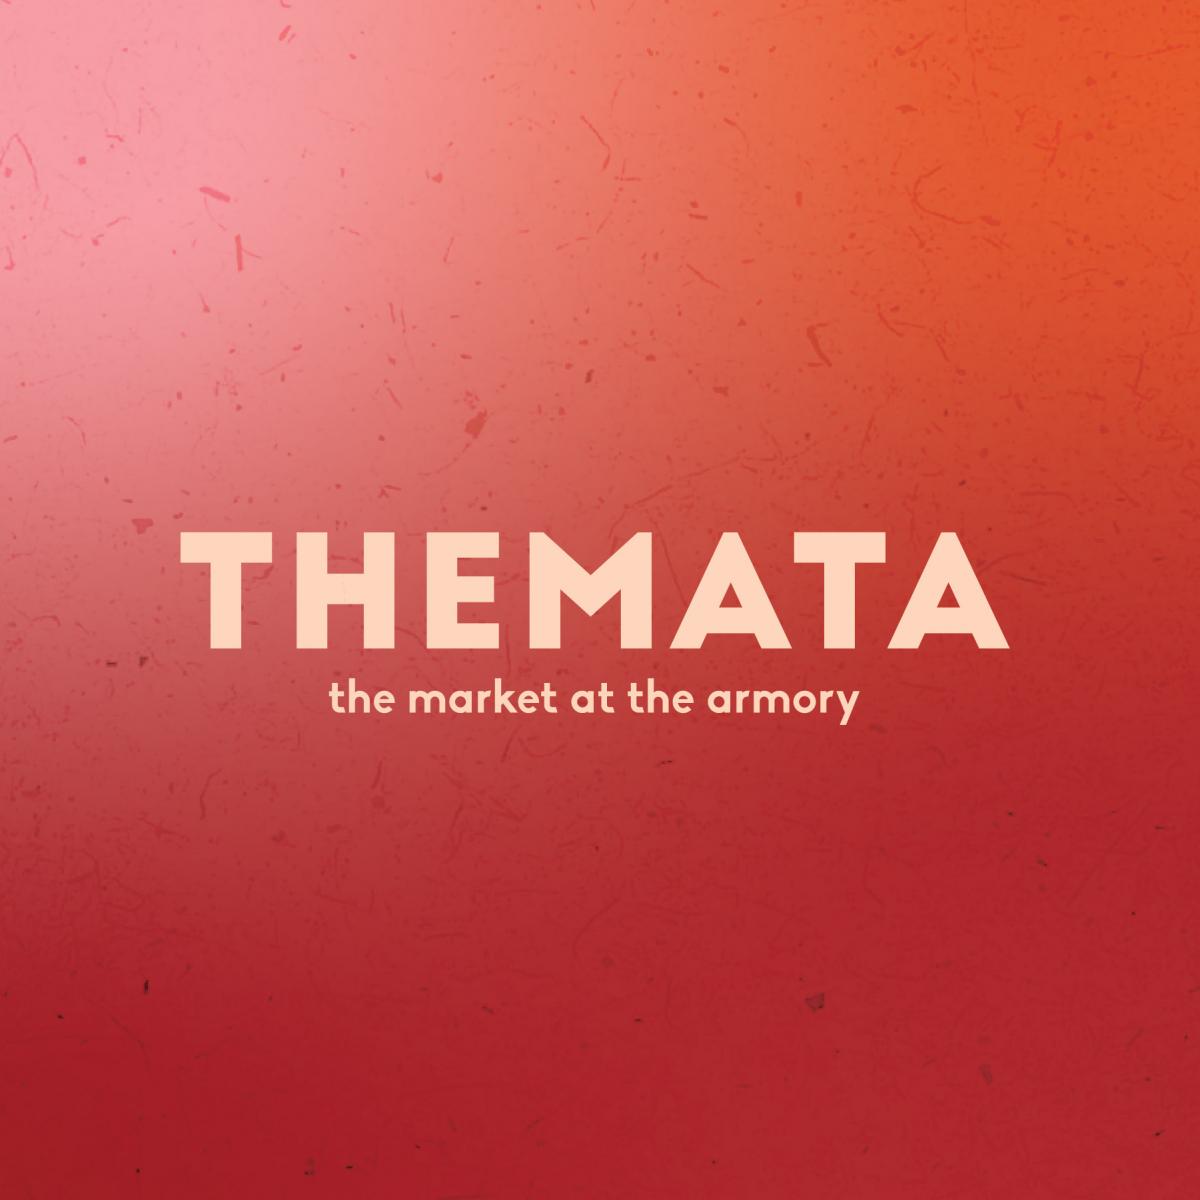 THEMATA Holiday Markets